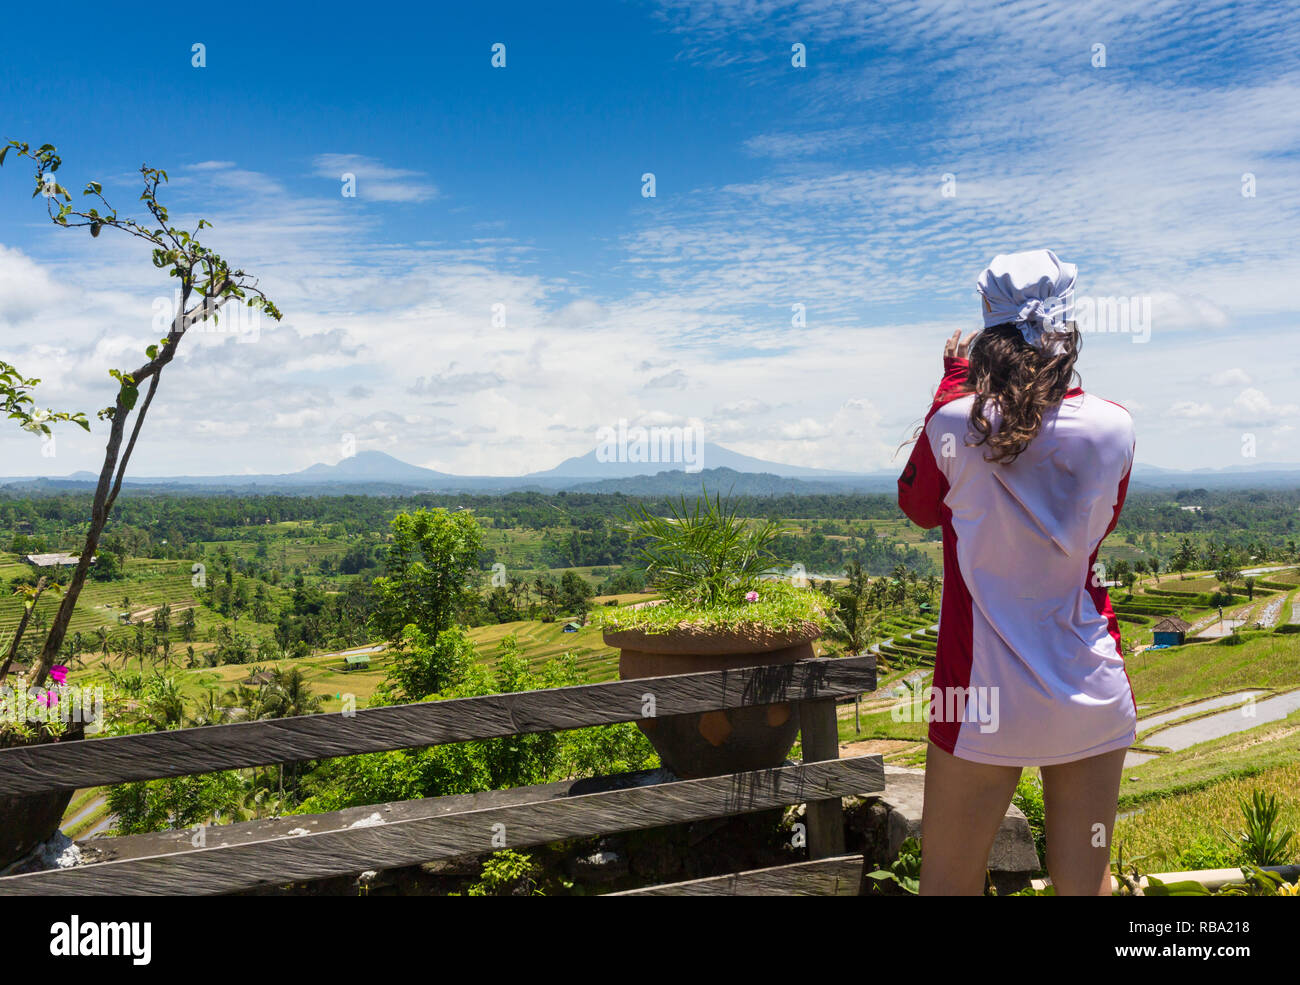 Familienurlaub Lebensstil. Junge Frau stand am Rande der überhängenden Brücke auf hohen Felsen. Happy girl auf der Suche nach atemberaubenden tropischen Dschungel. Tukad Melangit ist beliebtes Reiseziel in Bali. Stockfoto